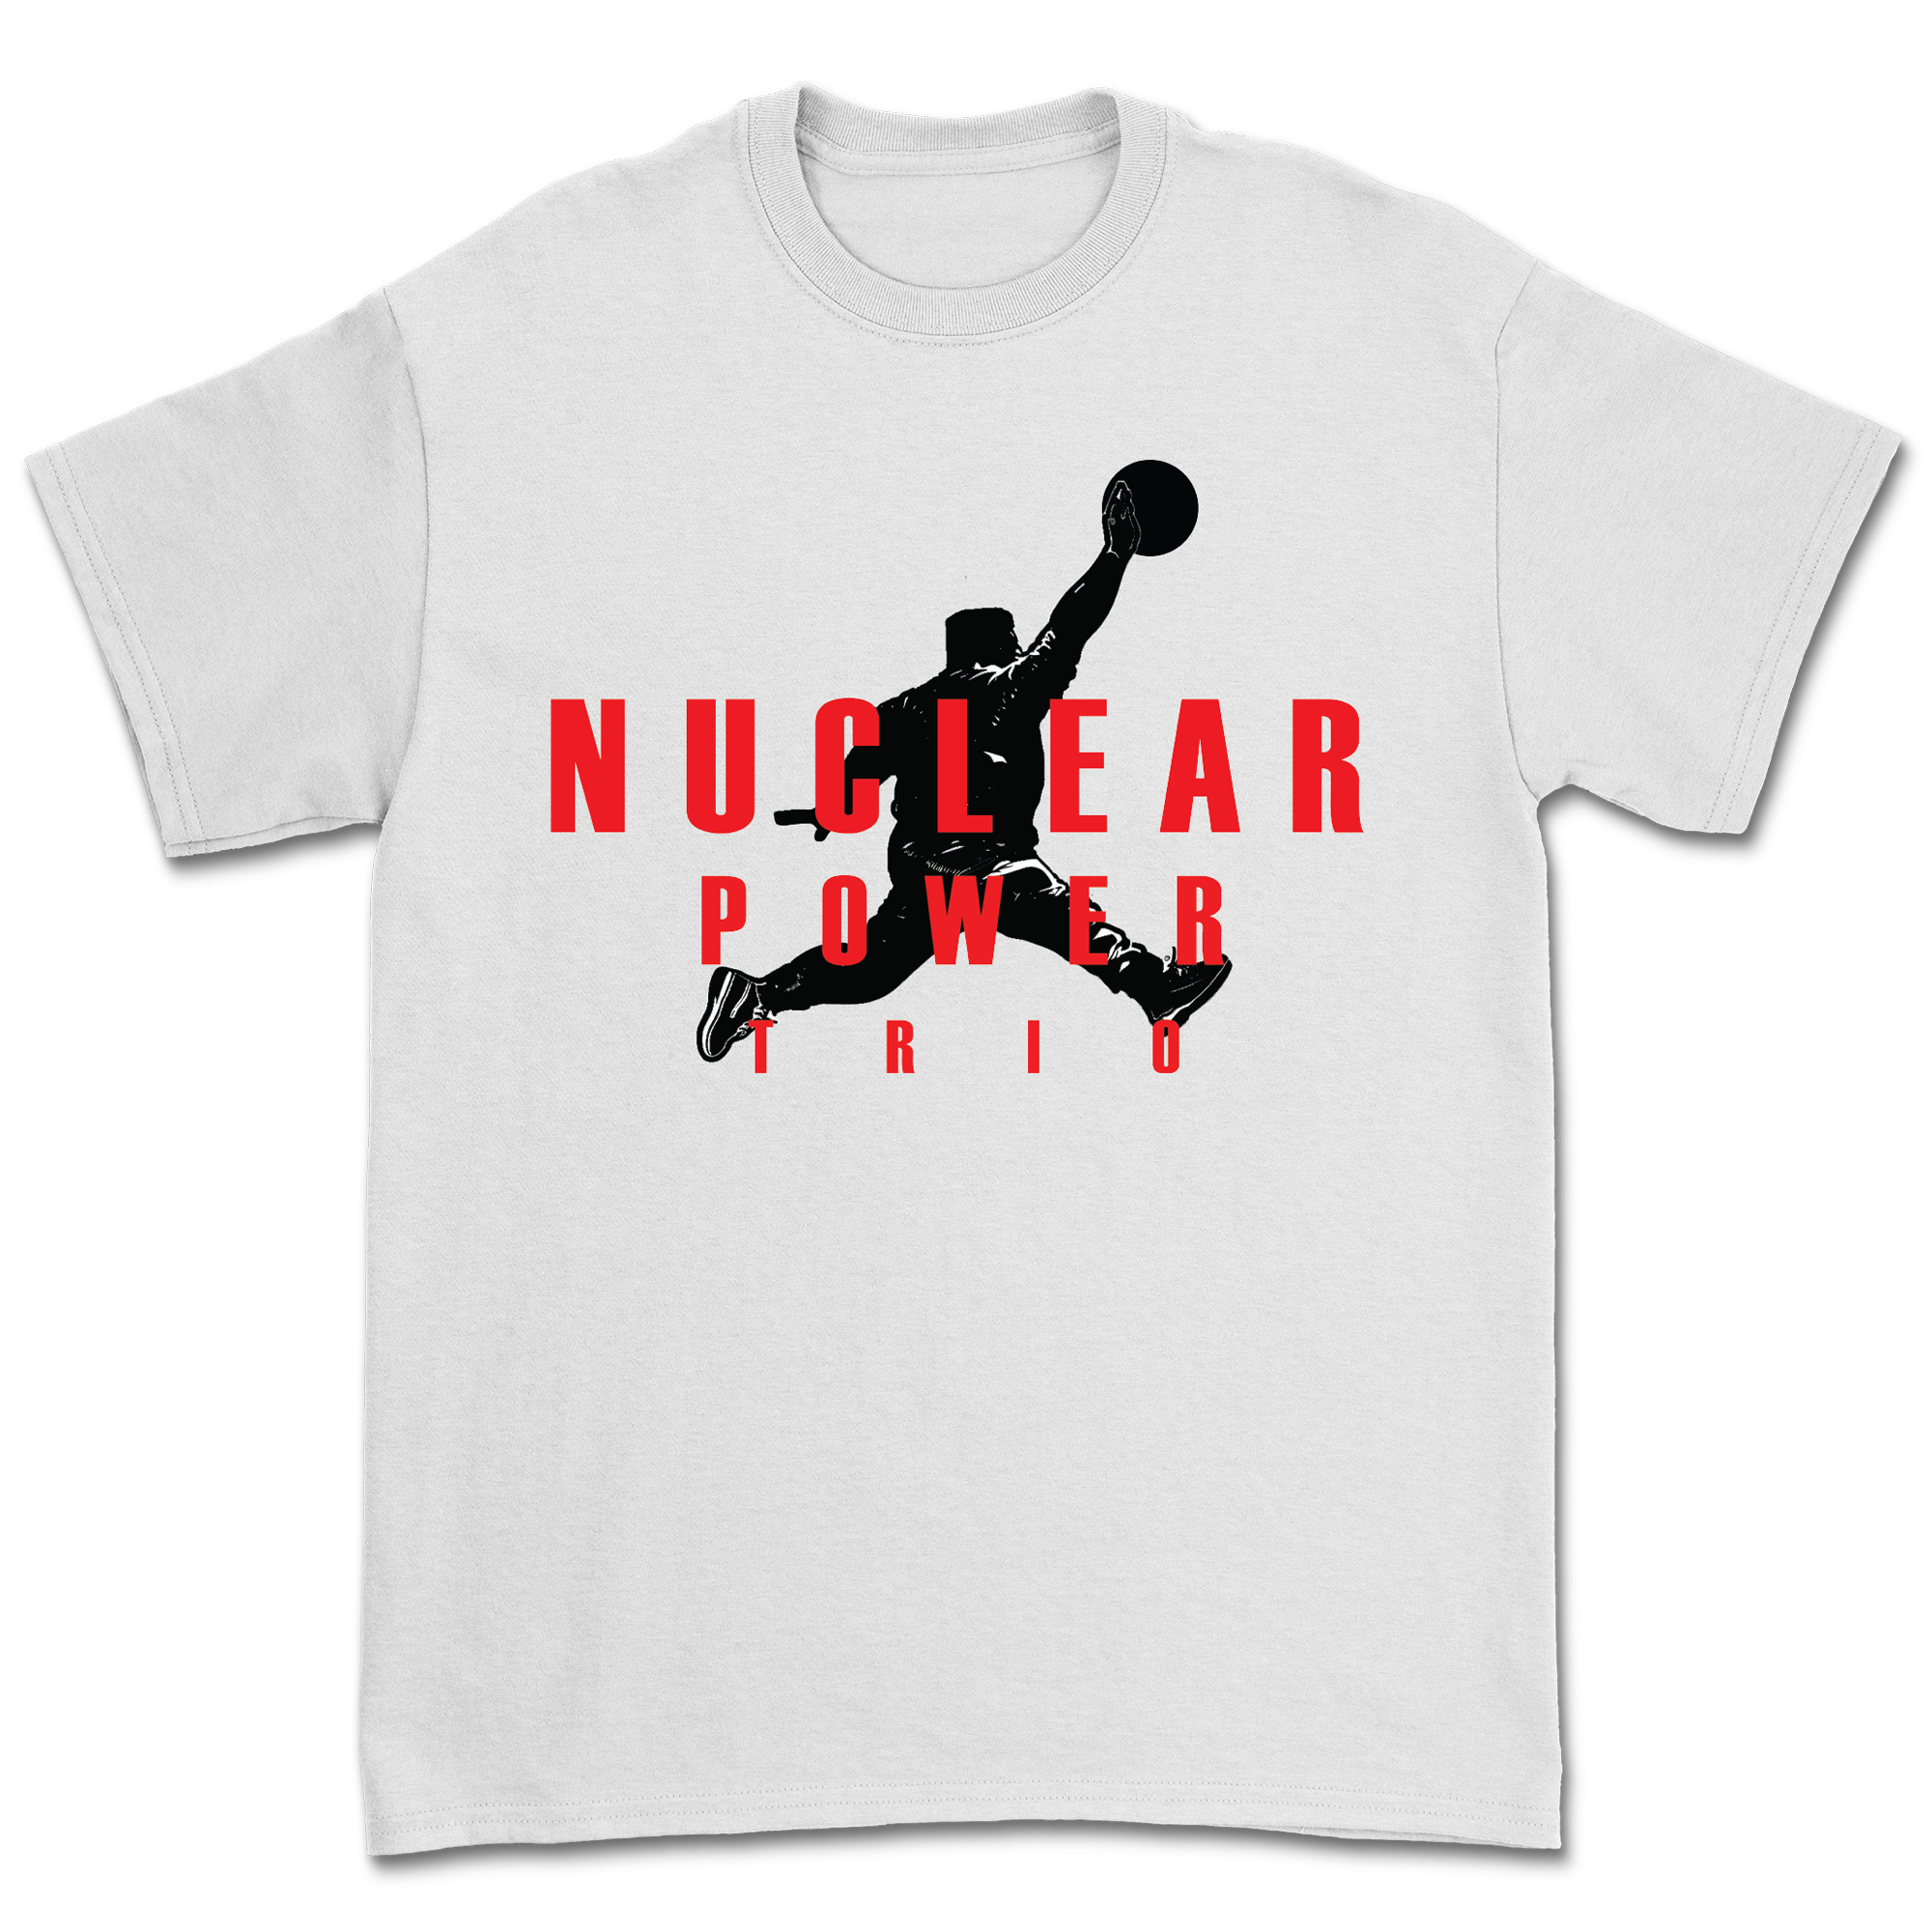 Nuclear Power Trio - Air Kimmy T-Shirt